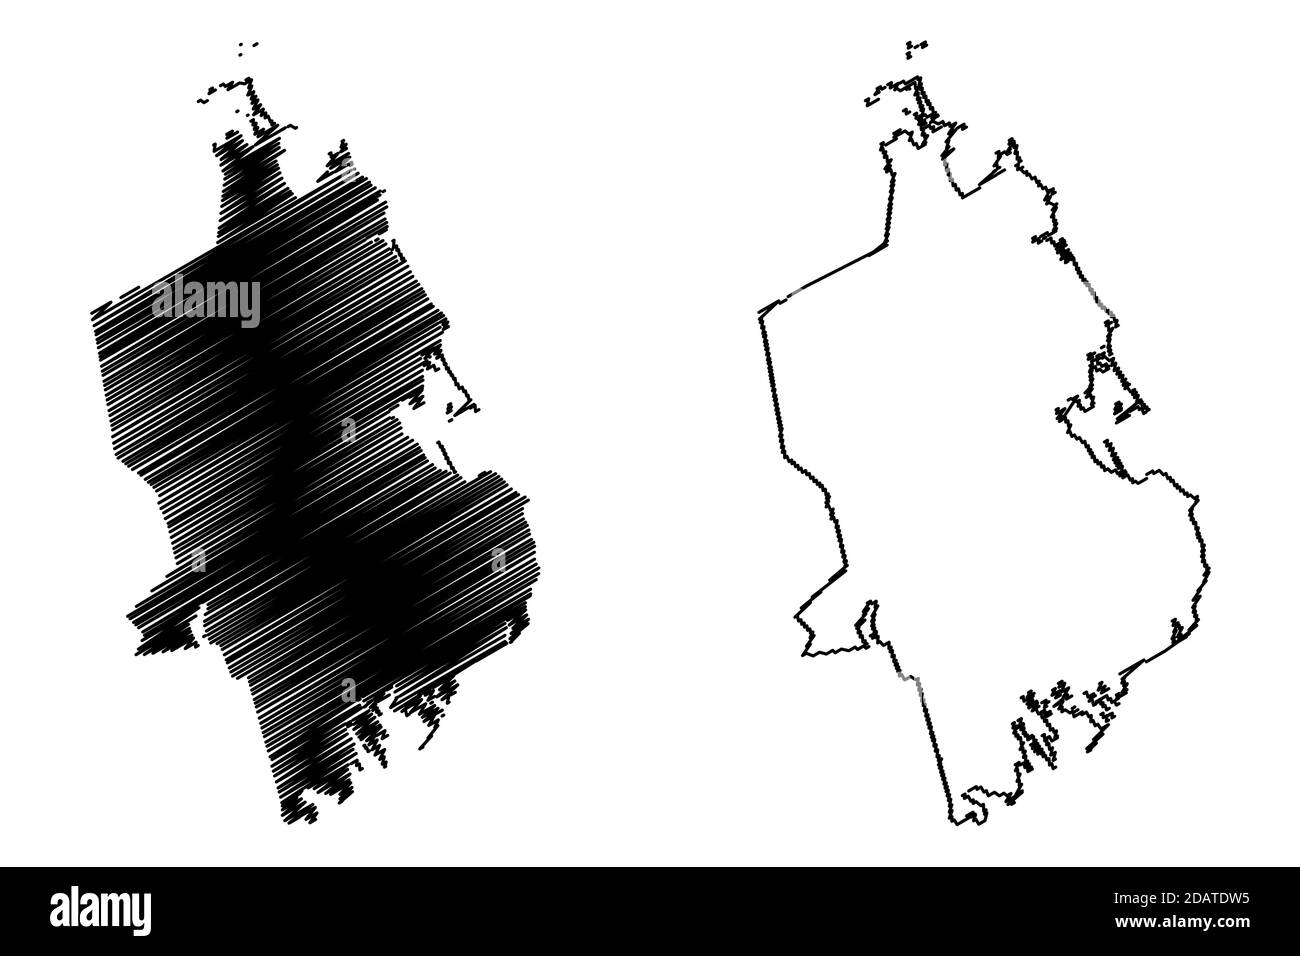 Plymouth County, Commonwealth del Massachusetts (Stati Uniti, Stati Uniti d'America, Stati Uniti, Stati Uniti, Stati Uniti) mappa vettoriale illustrazione, schizzo scrimolo Plymout Illustrazione Vettoriale